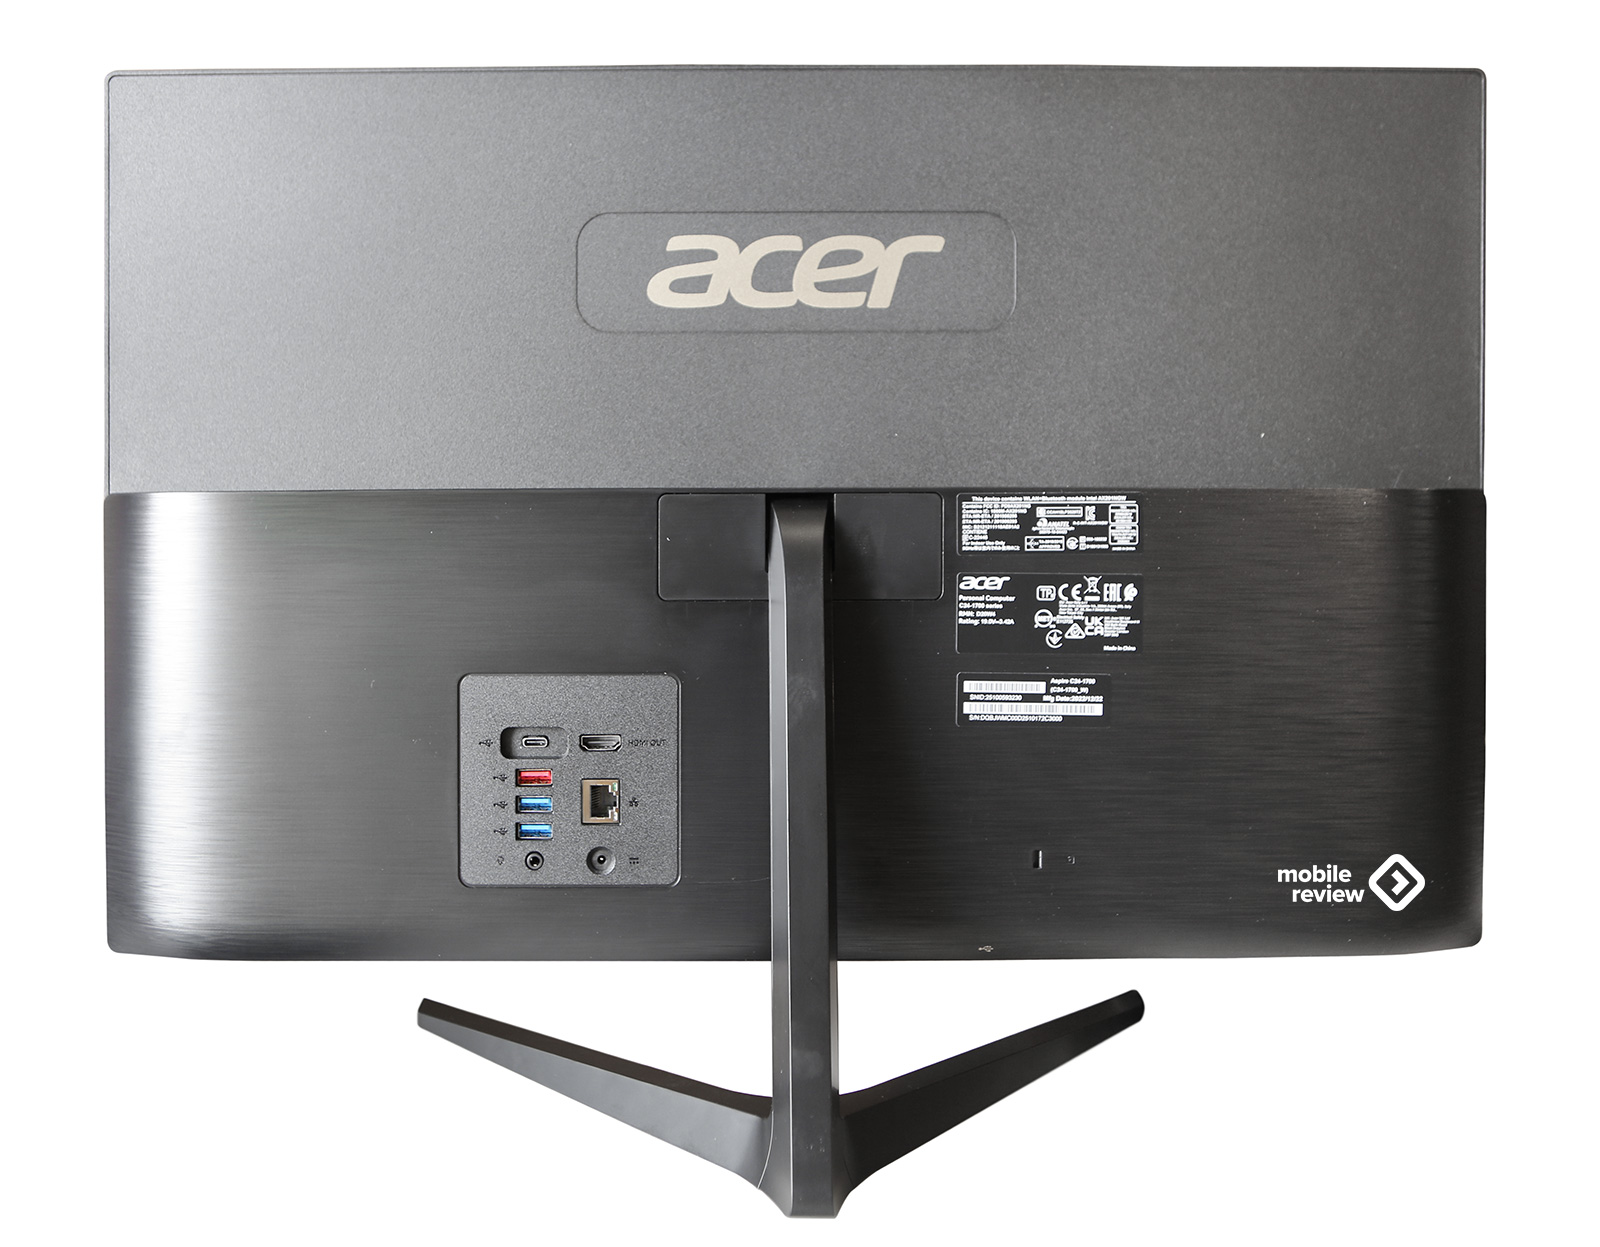 Моноблок acer c24 1300. Acer Aspire c24-1650. Подставка под моноблок Acer c24. Моноблок с изогнутым экраном. Моноблок Асер с скрывающейся камерой.